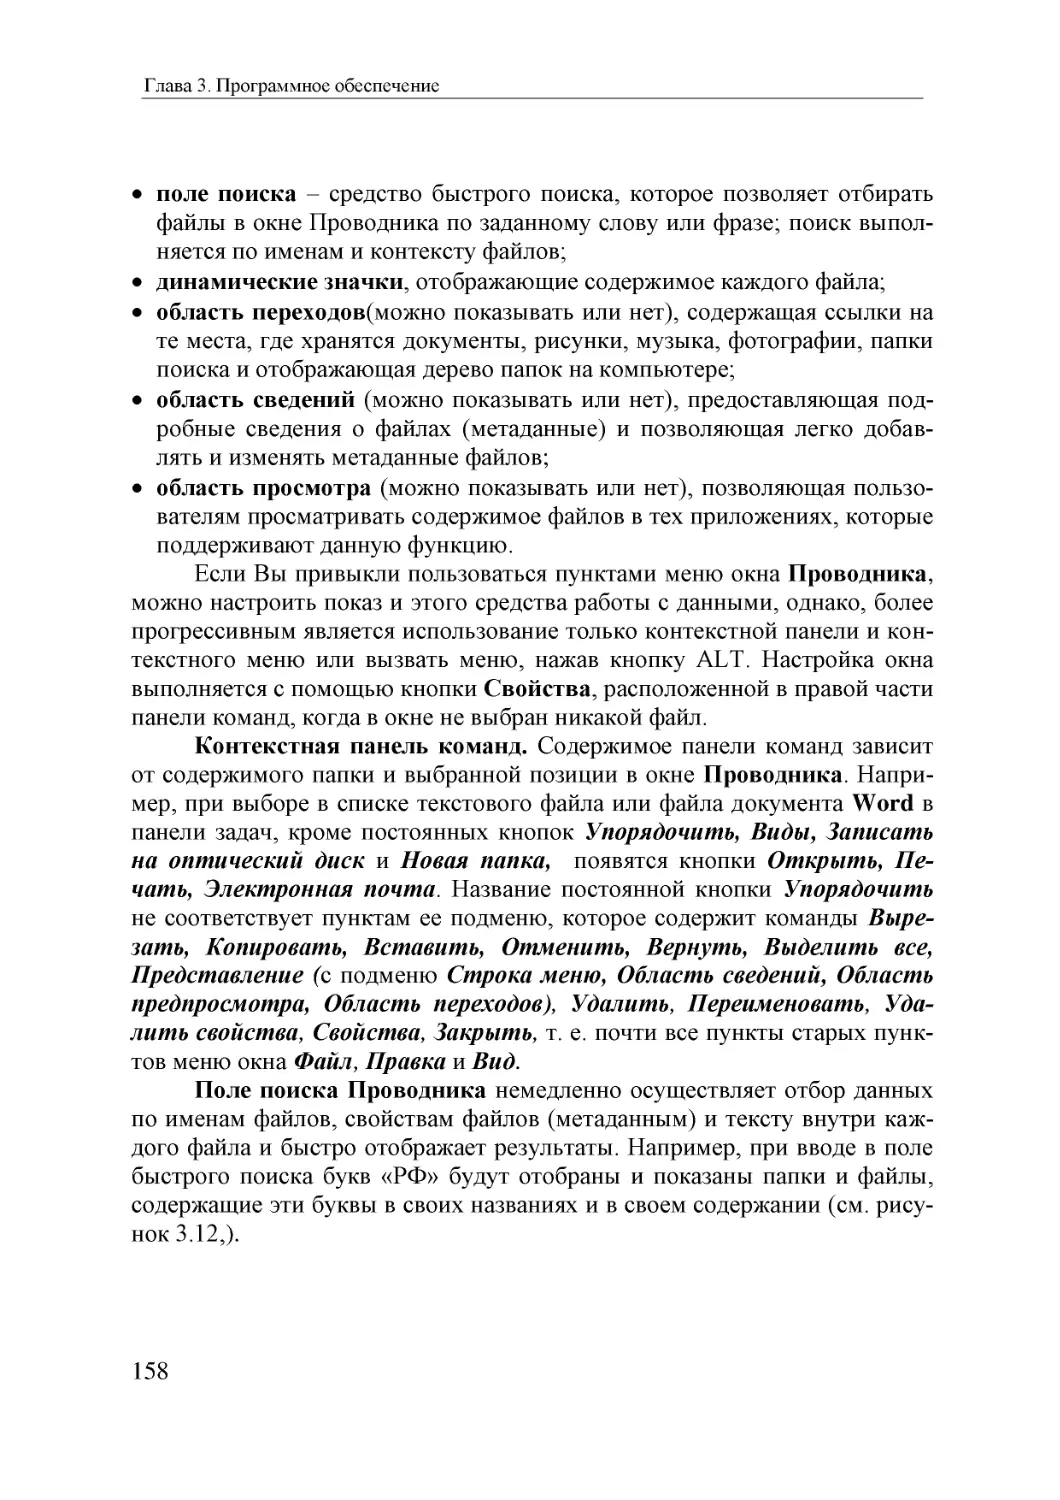 Informatika_Uchebnik_dlya_vuzov_2010 158